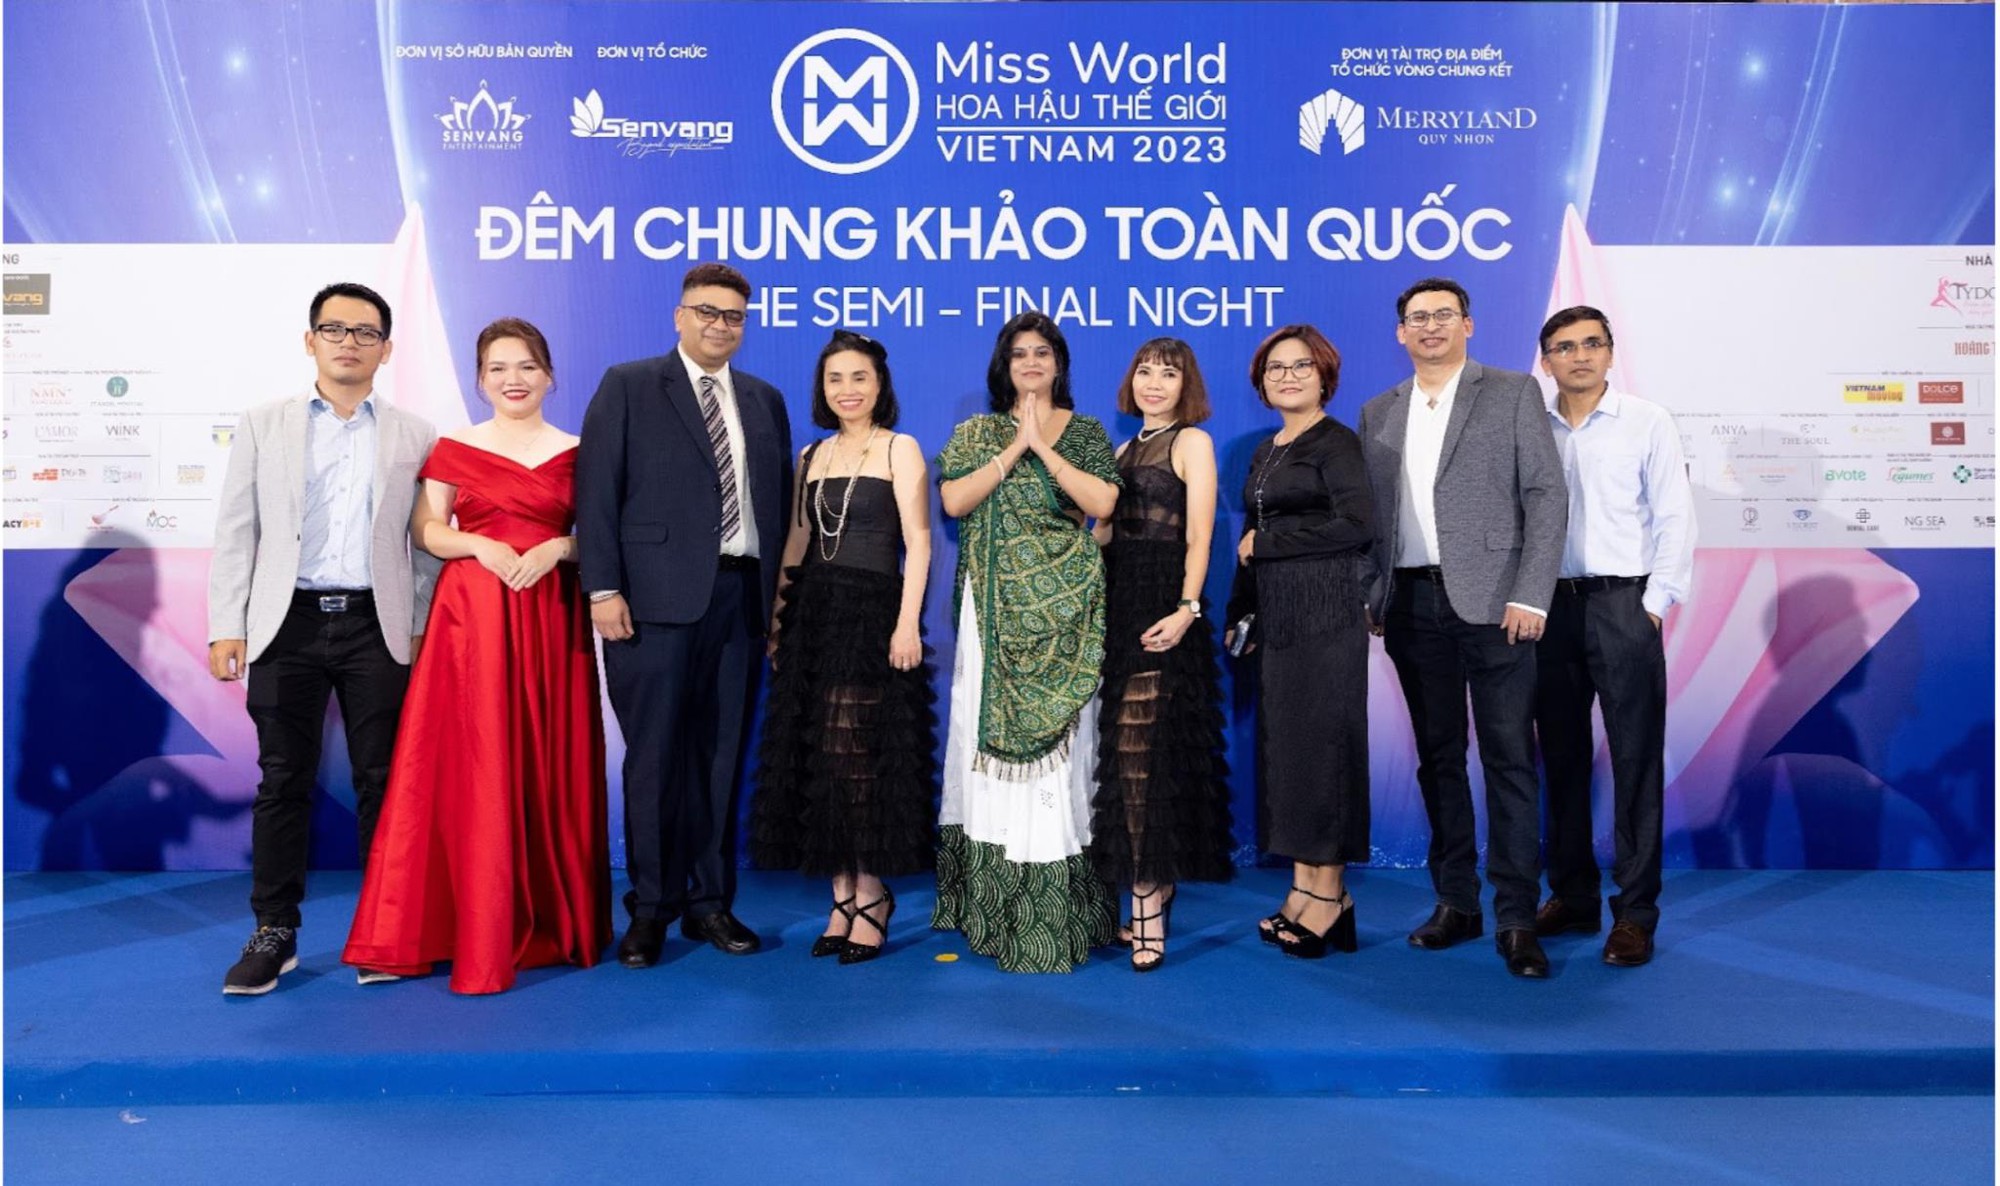 TYDOL Plus trao hoa cho top 5 Người đẹp Du lịch Miss World Vietnam 2023 - Ảnh 2.